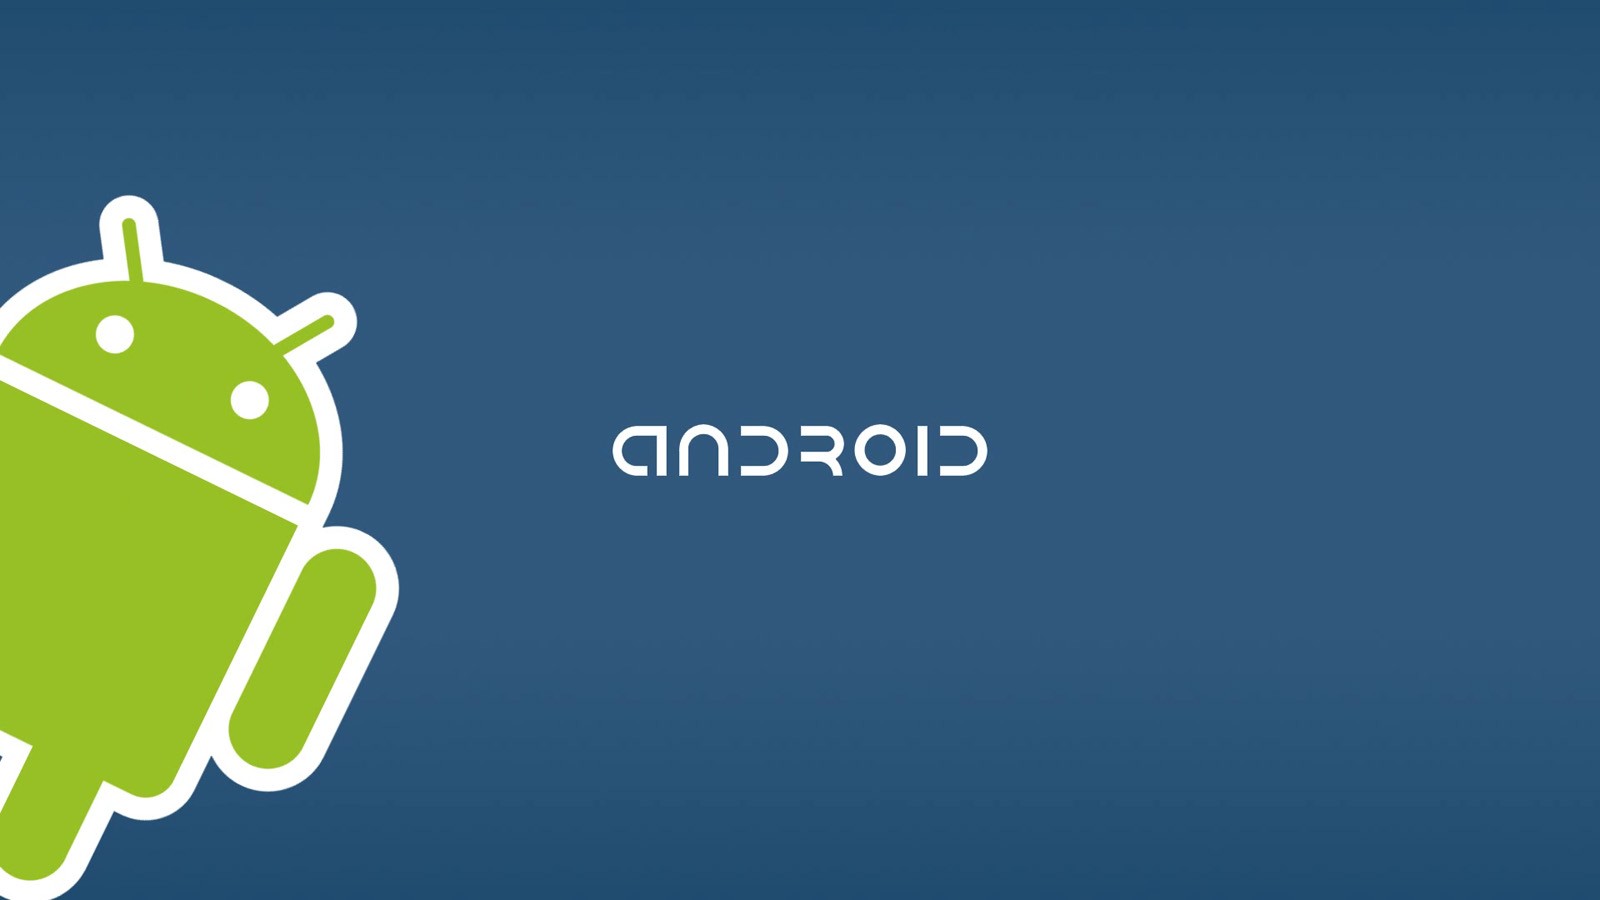 Rumores sobre las características de Android 4.2, hablemos del futuro cercano de Android